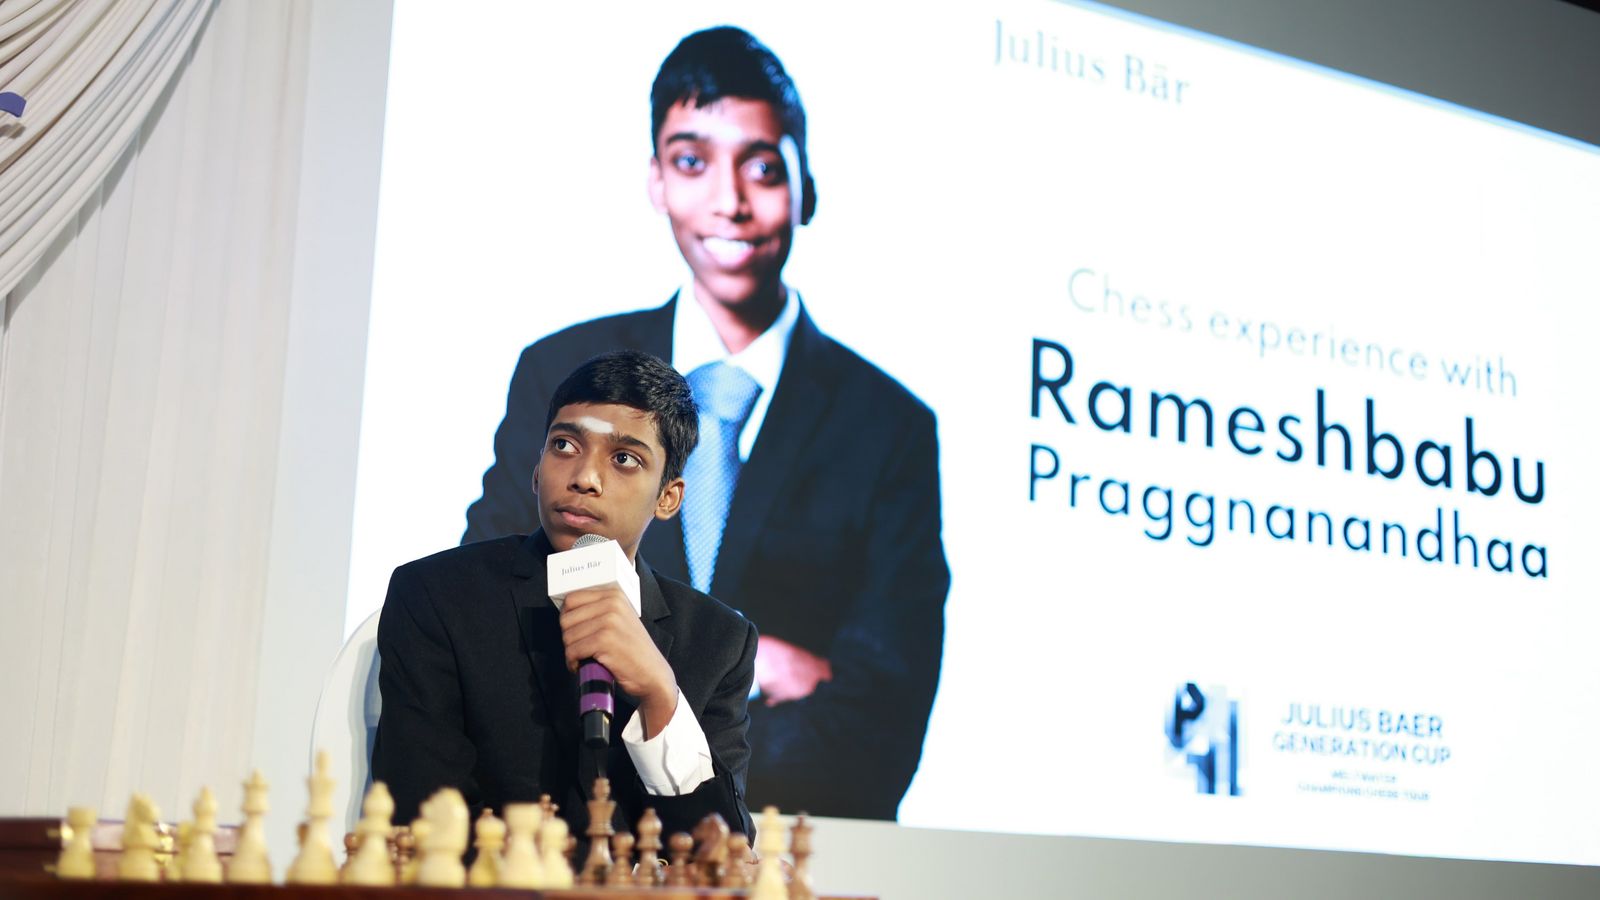 The chess games of Rameshbabu Praggnanandhaa